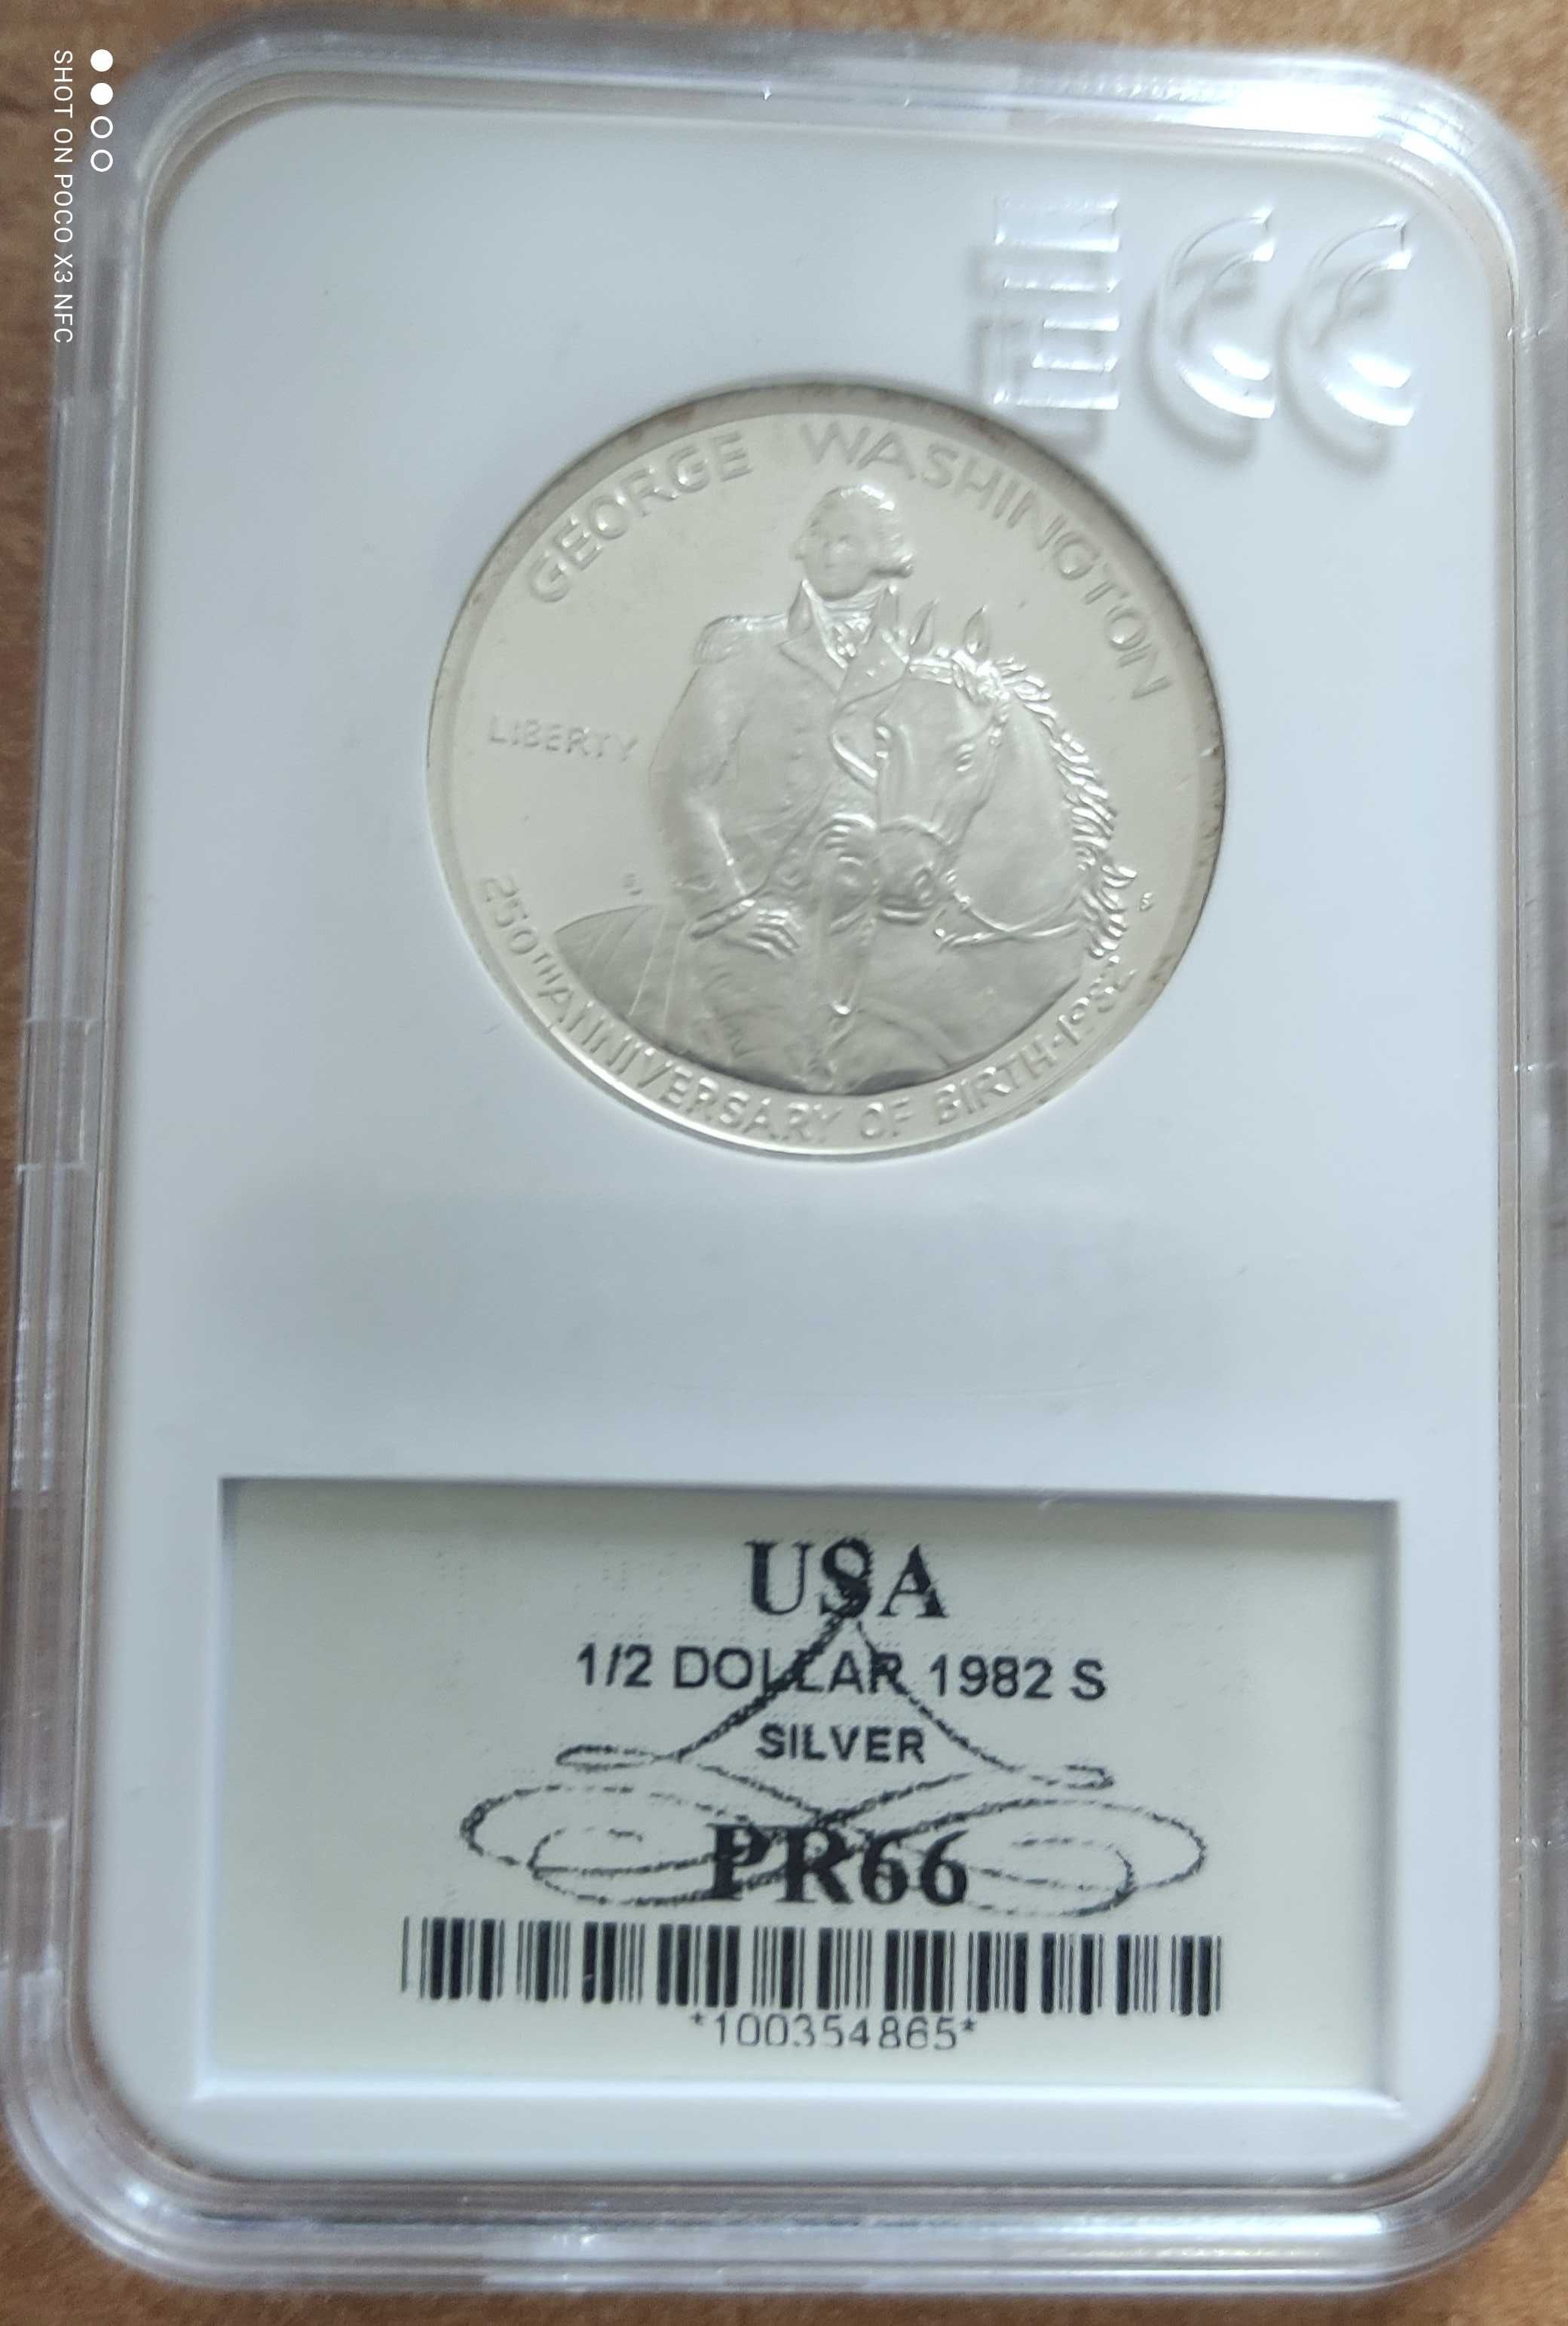 Srebrna kolekcjonerska moneta USA half dollar 1982 srebro ag grading